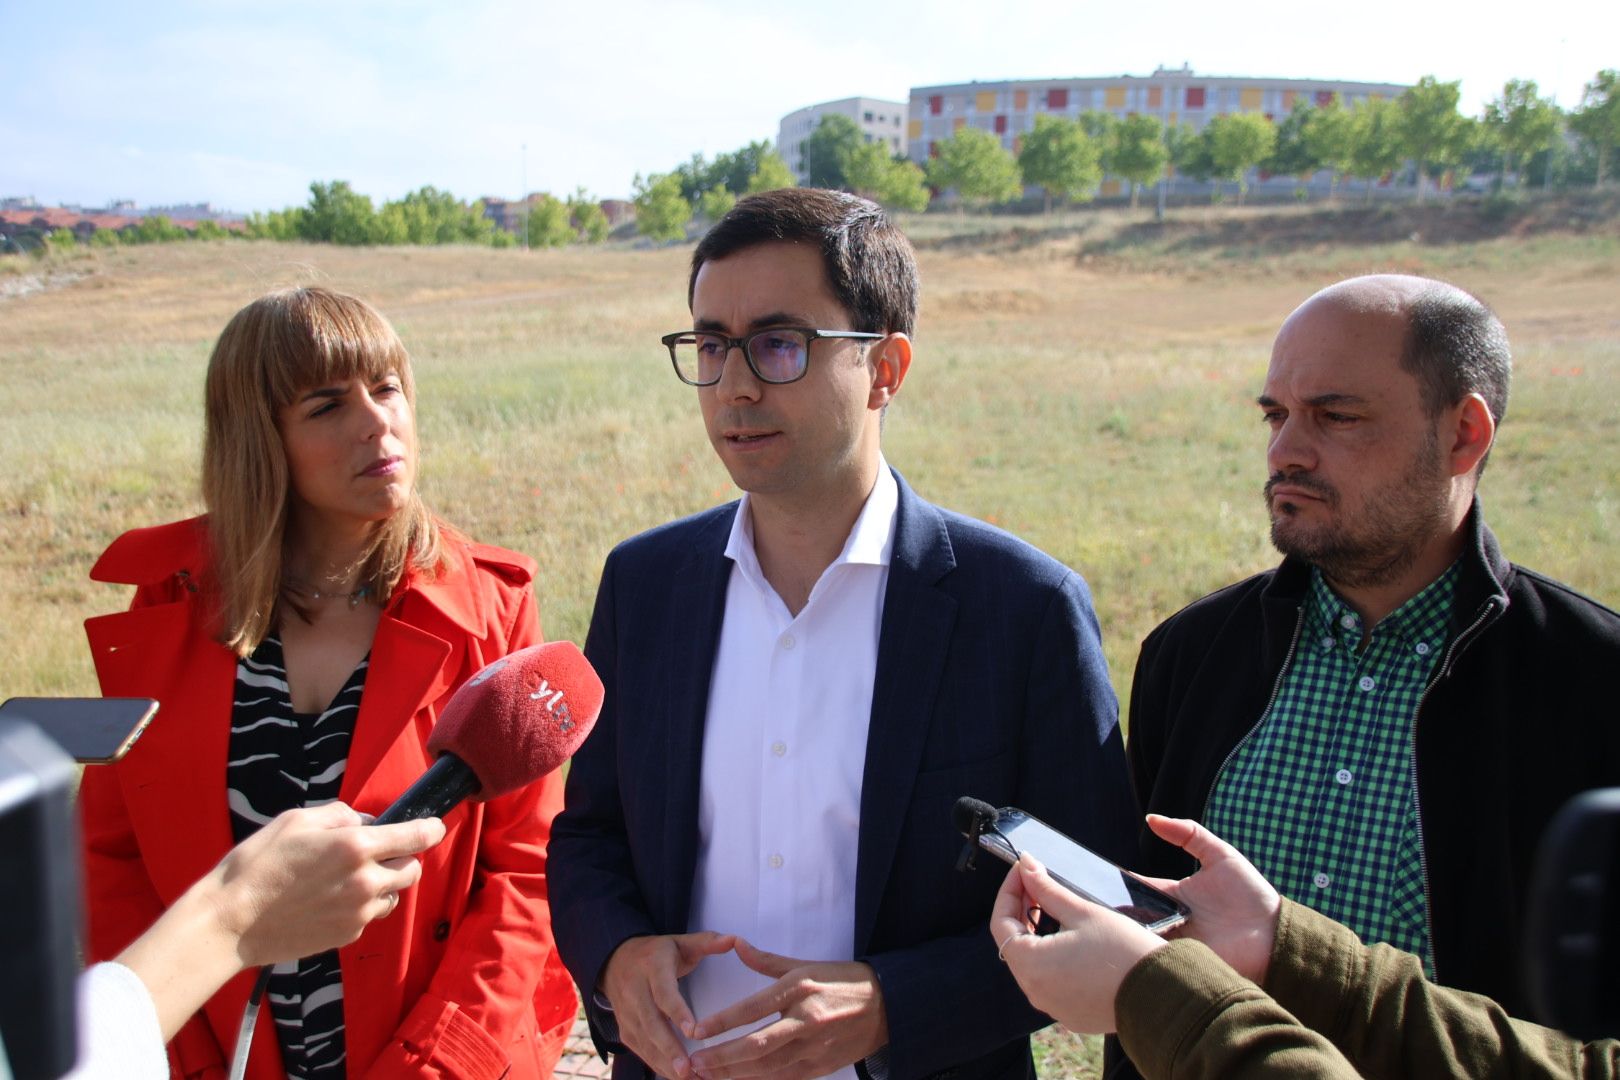 José Luis Mateos, María Sánchez y Chema Collados informan sobre propuestas en materia de infraestructuras y servicios municipales en los barrios